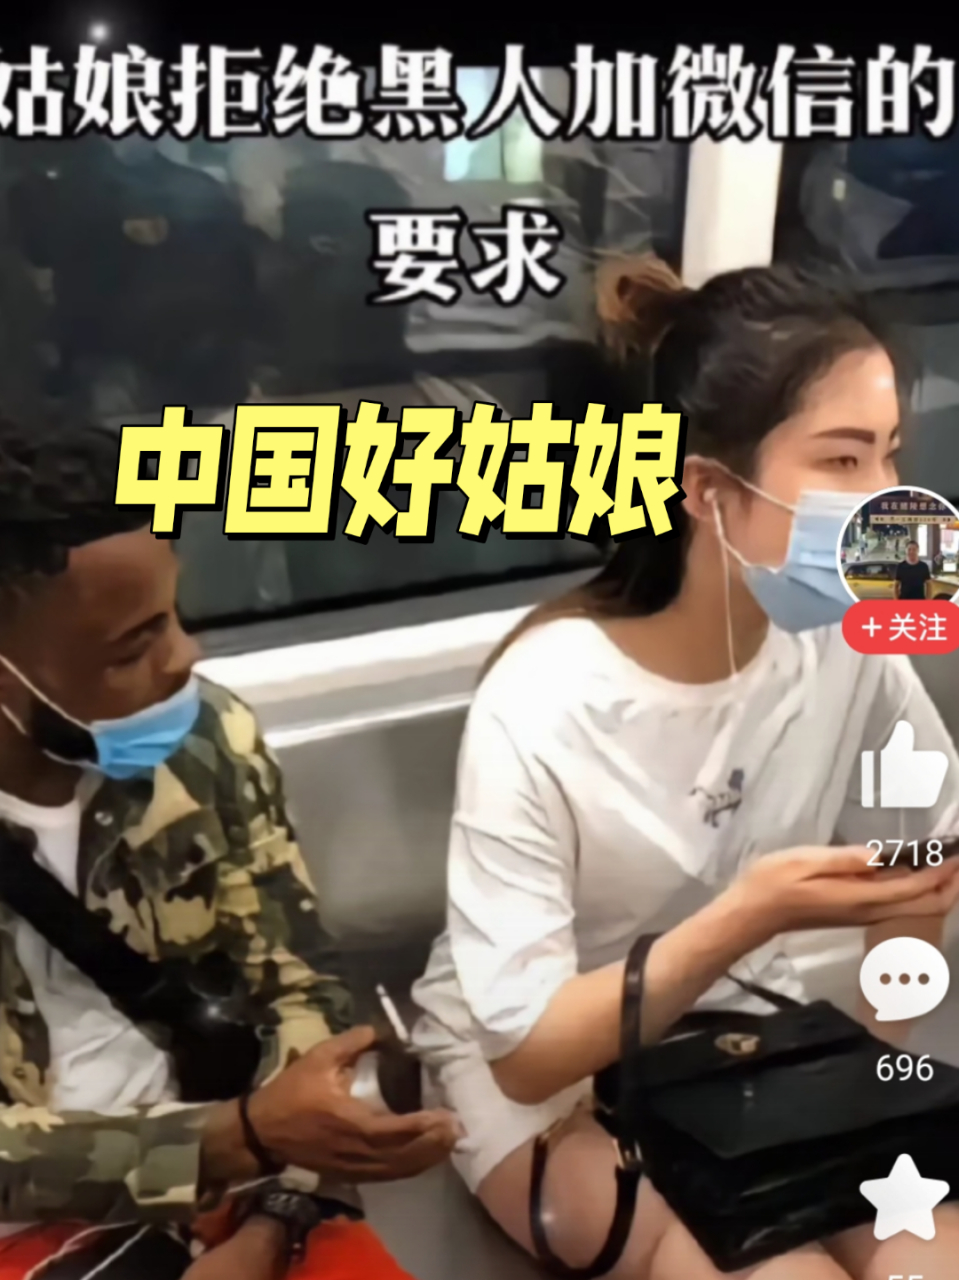 广州一地铁上,一黑人小伙搭讪中国姑娘还要求加微信被婉拒